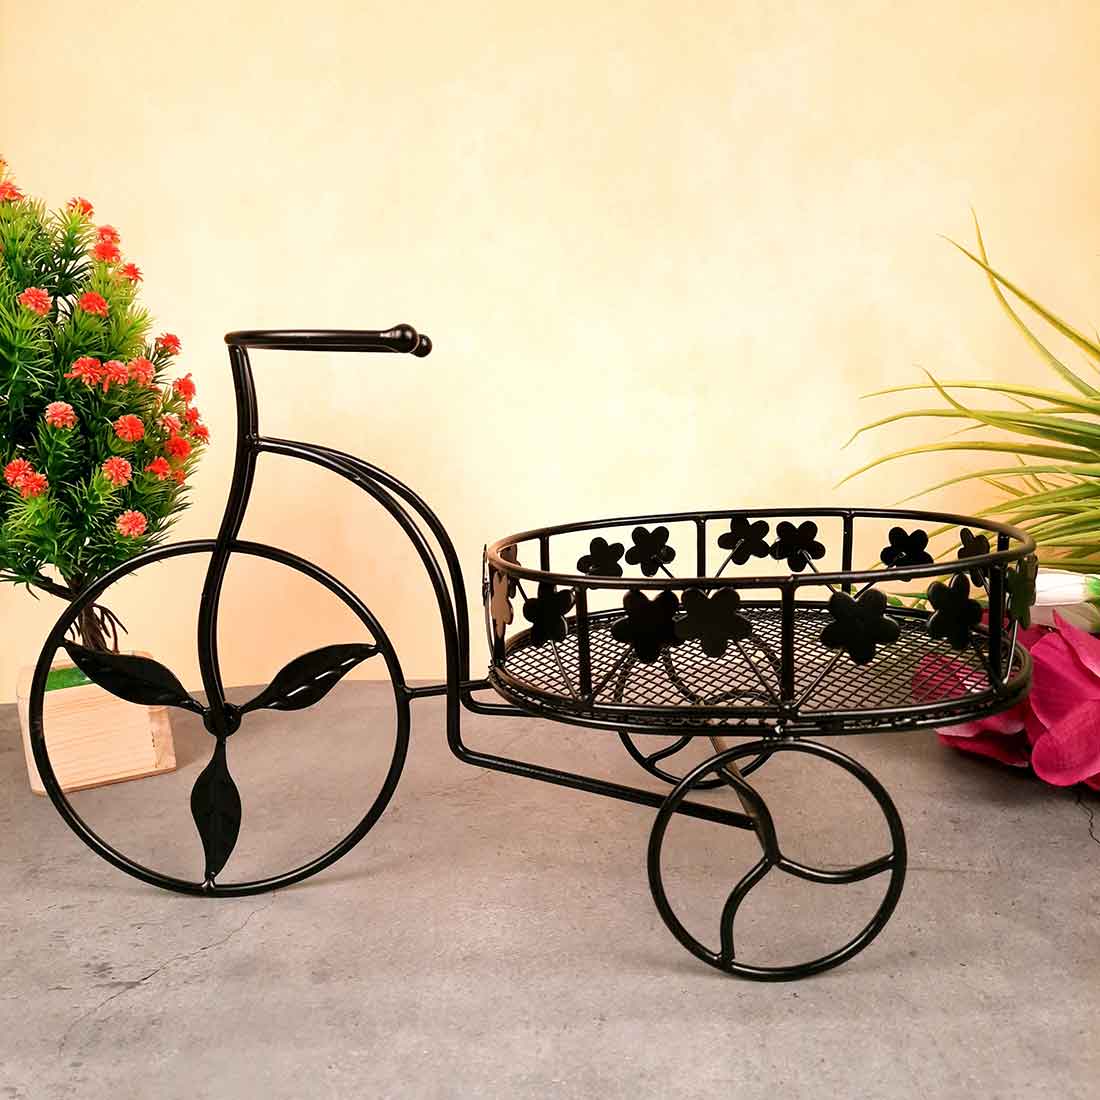 Fruit Basket | Multipurpose Basket - Rickshaw Design - For Fruits, Vegetables, Kitchen & Dining Table Decor - 15 Inch - Apkamart#Style_Pack of 1